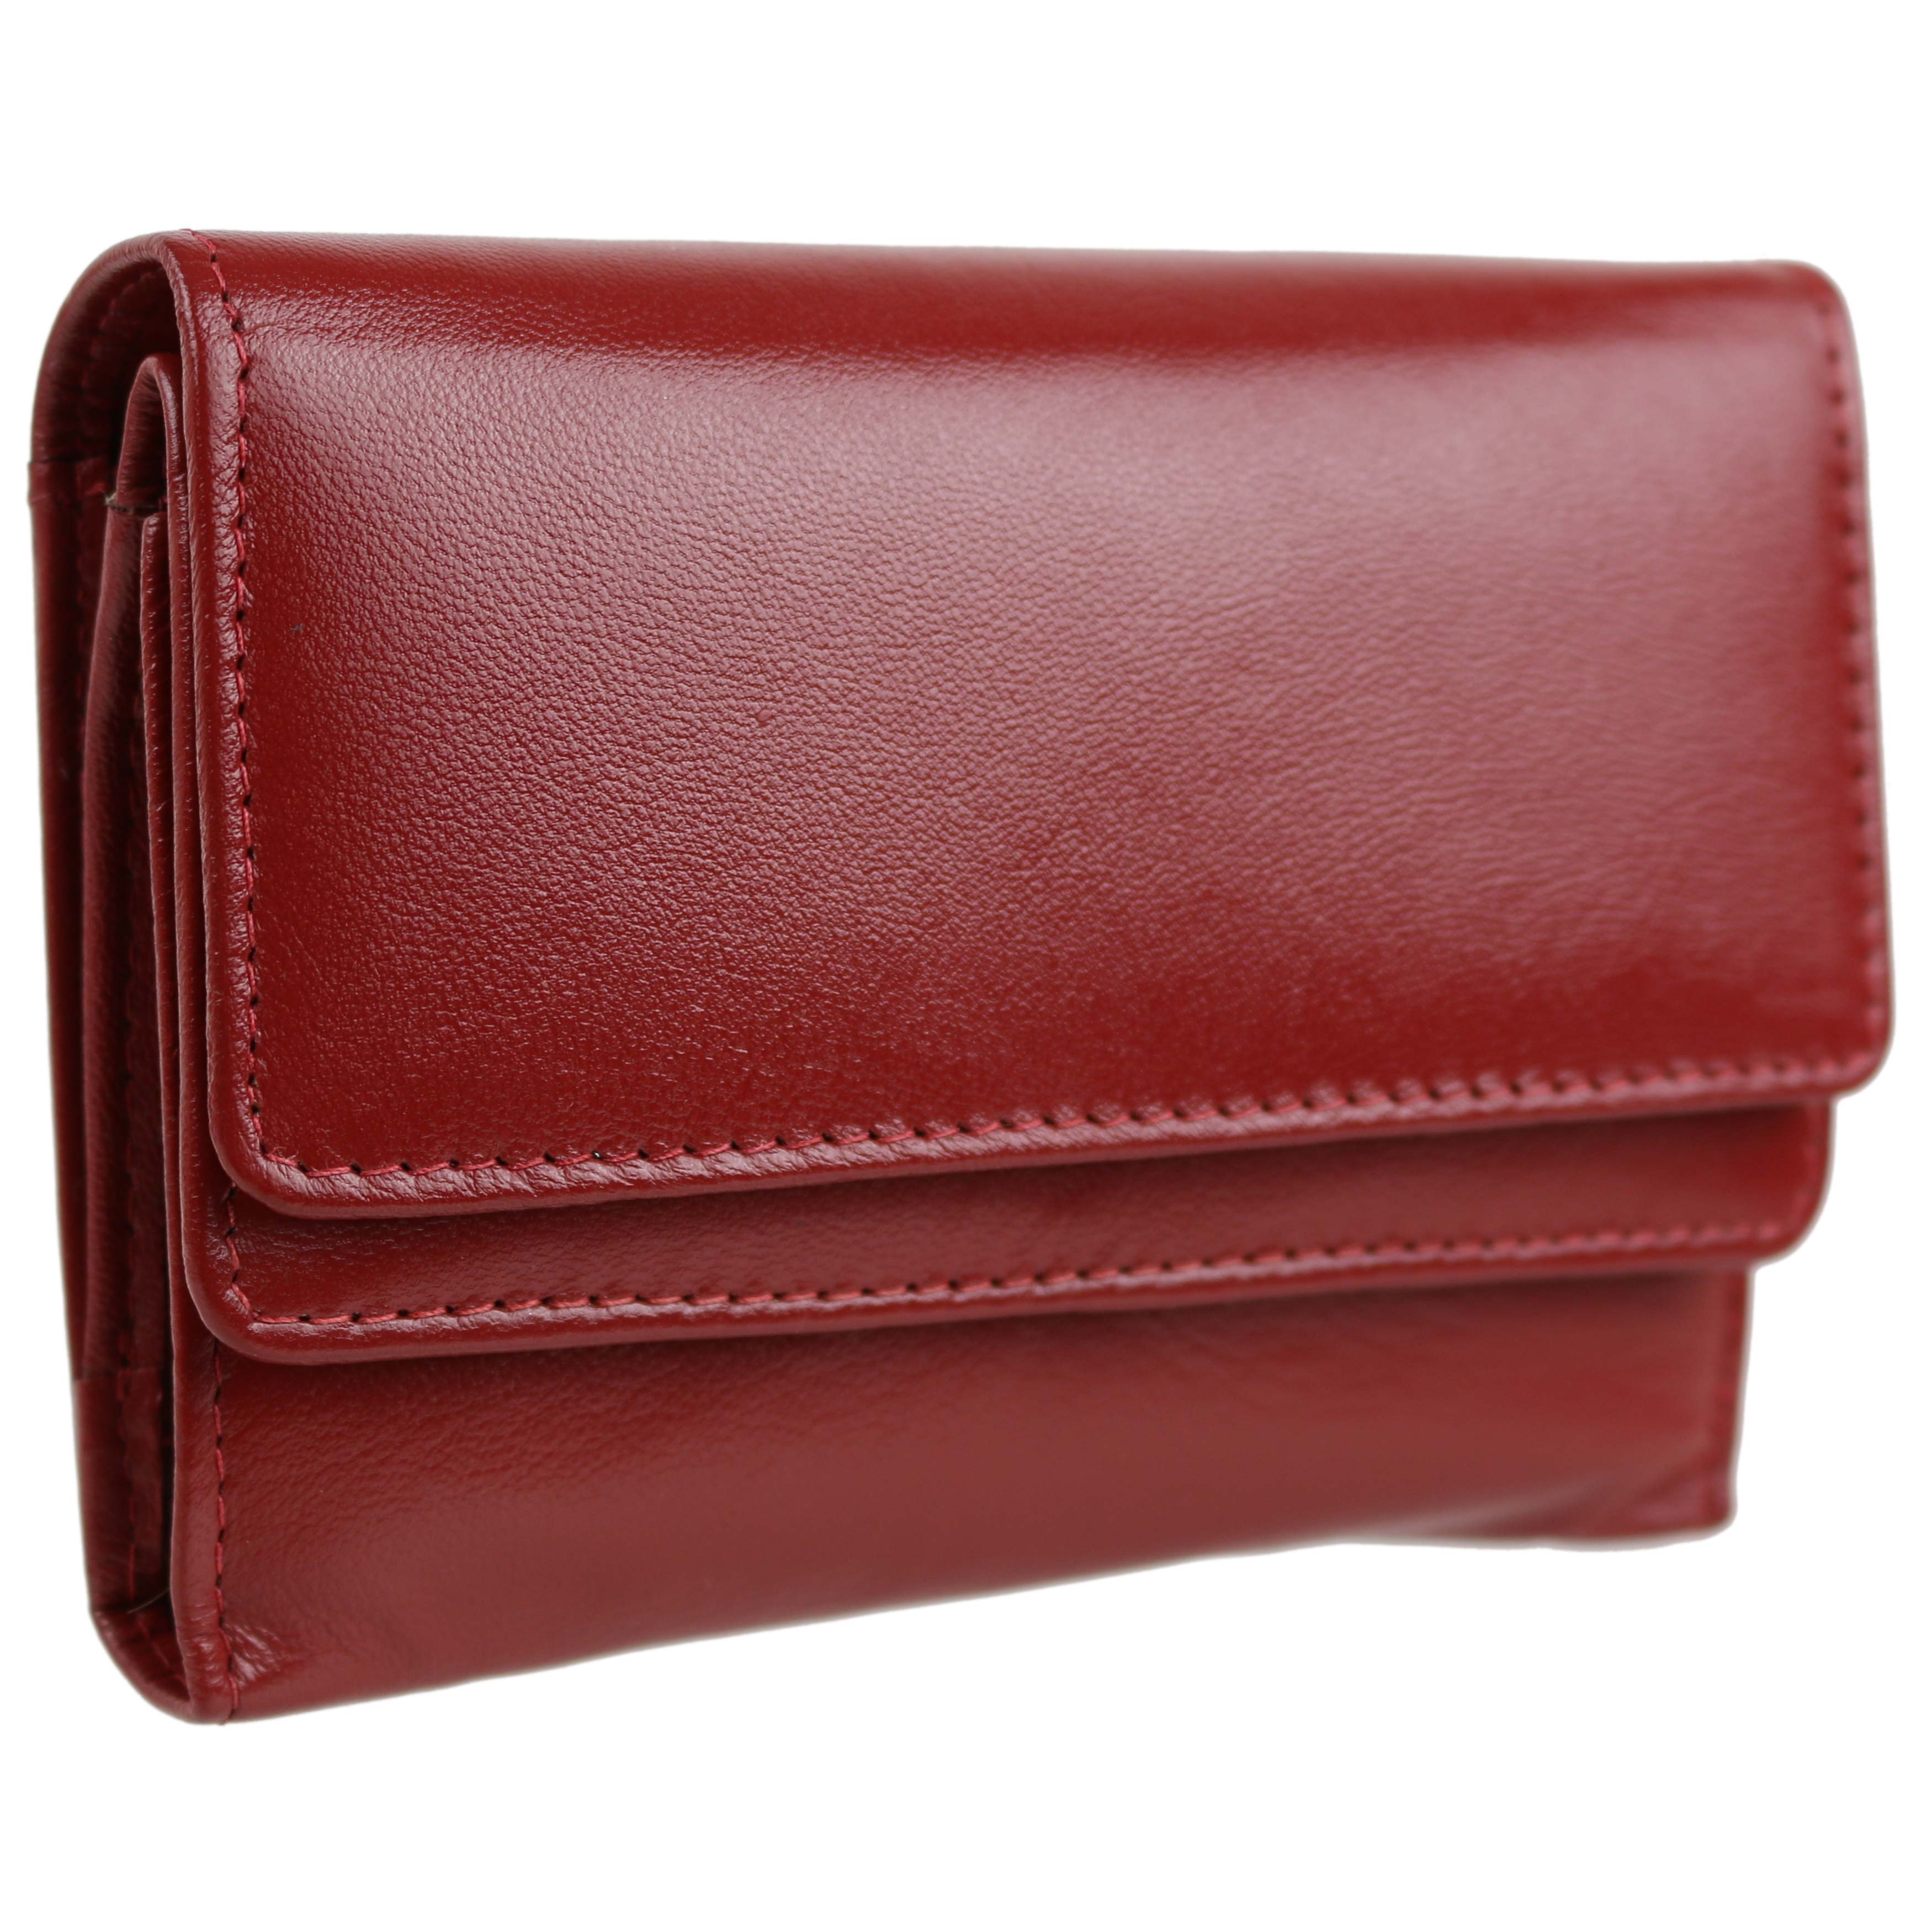 Dominique Leather Ladies Purse/Wallet | eBay